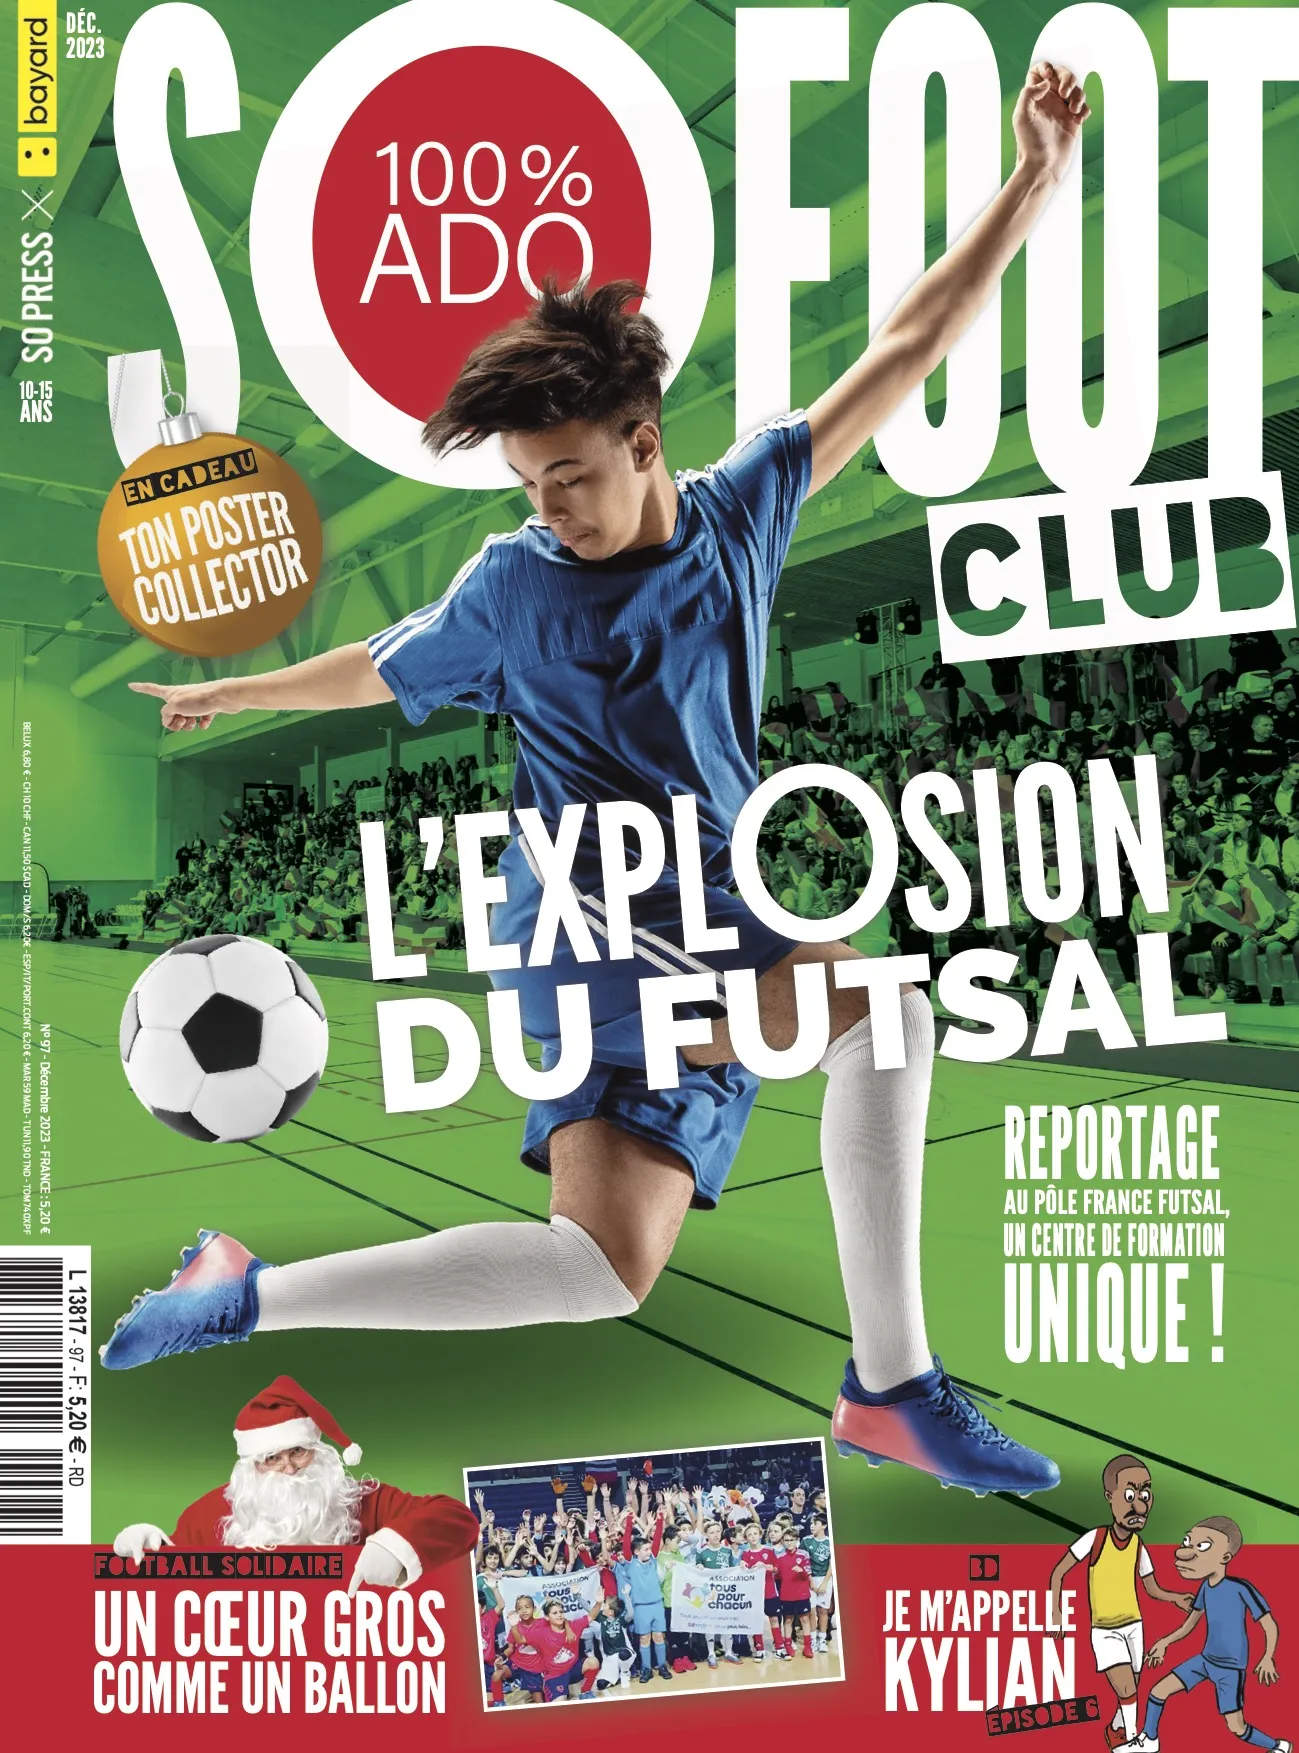 Mbappé, Futsal, Chelsea : le sommaire du nouveau SO FOOT CLUB